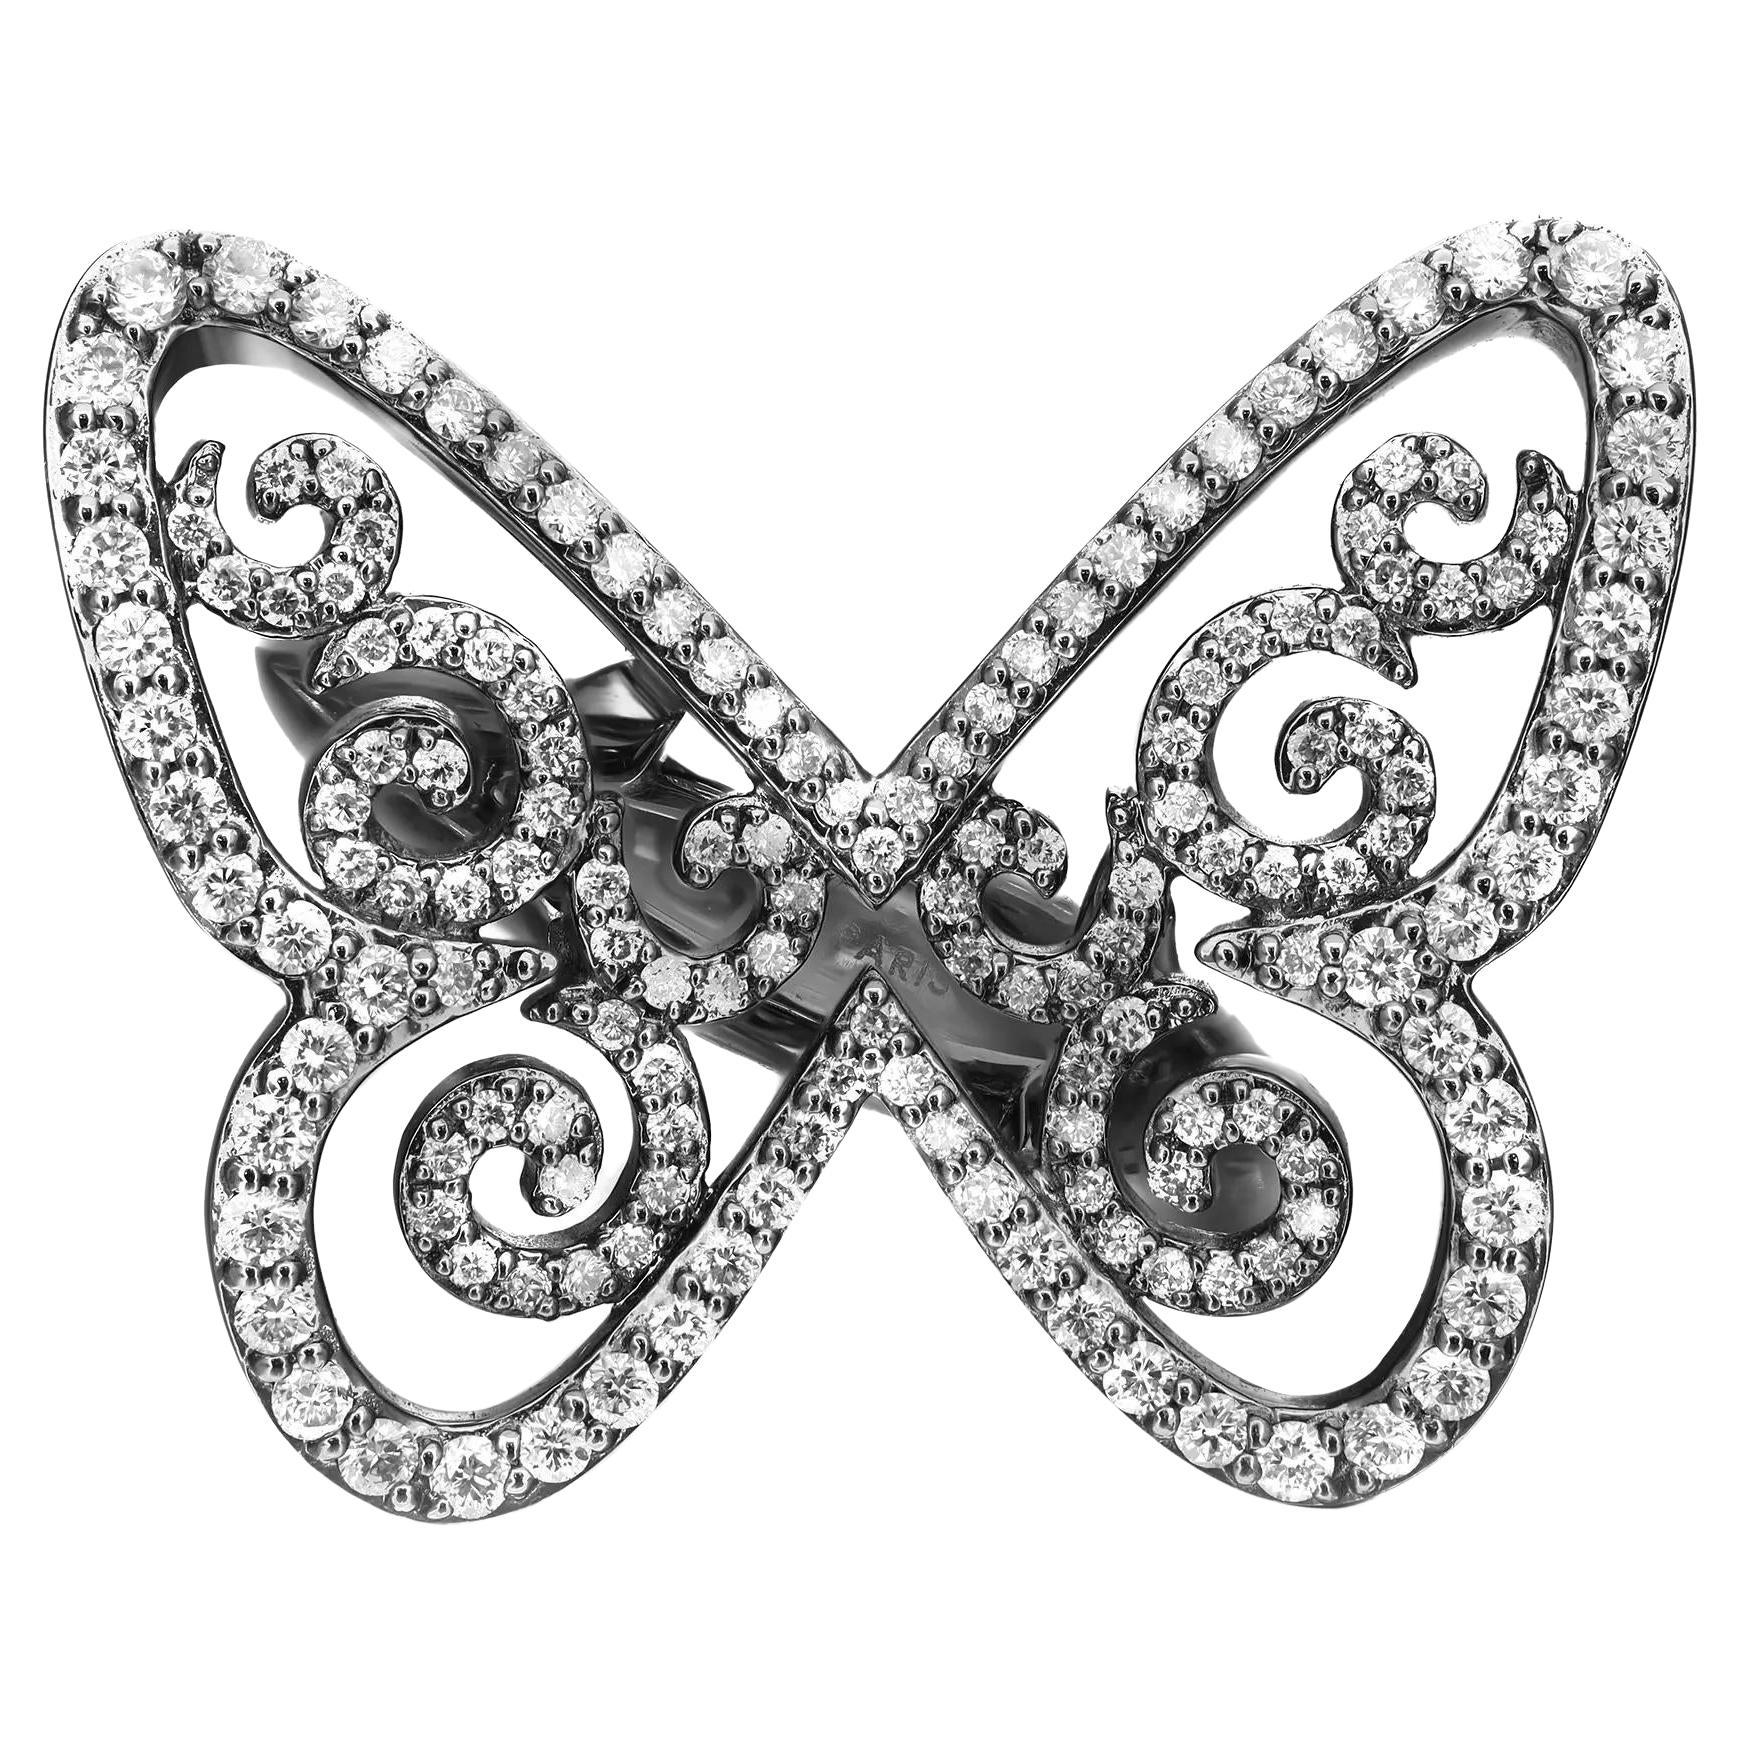 Messika Bague papillon arabesque en or blanc noirci 18 carats et diamants Taille 51 US 5,5